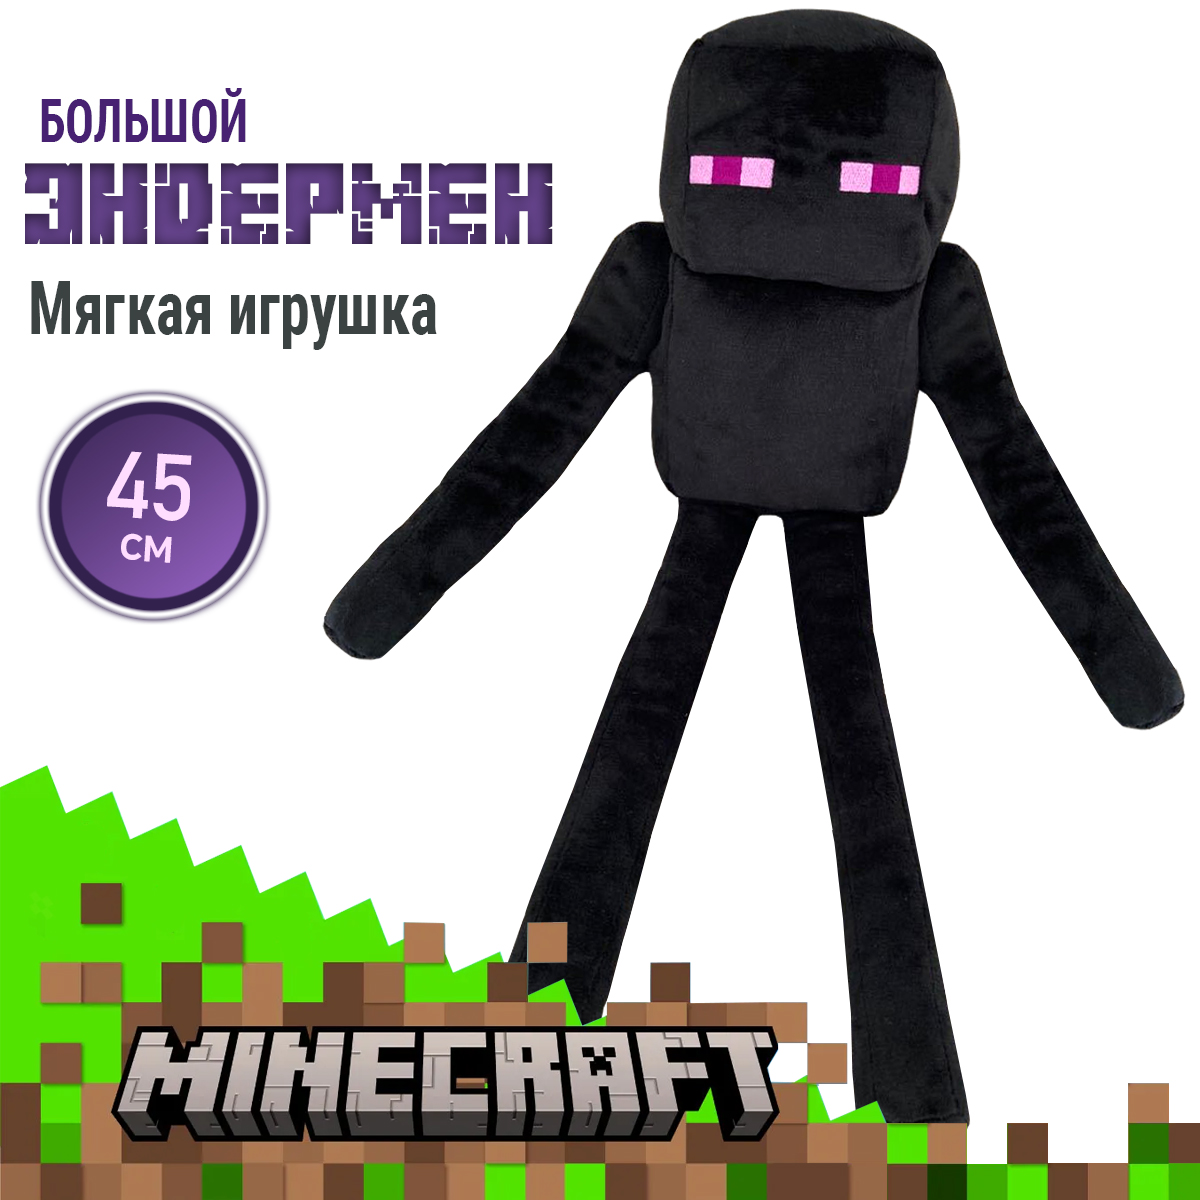 Мягкая игрушка Minecraft Эндермен из игры Майнкрафт 45 см